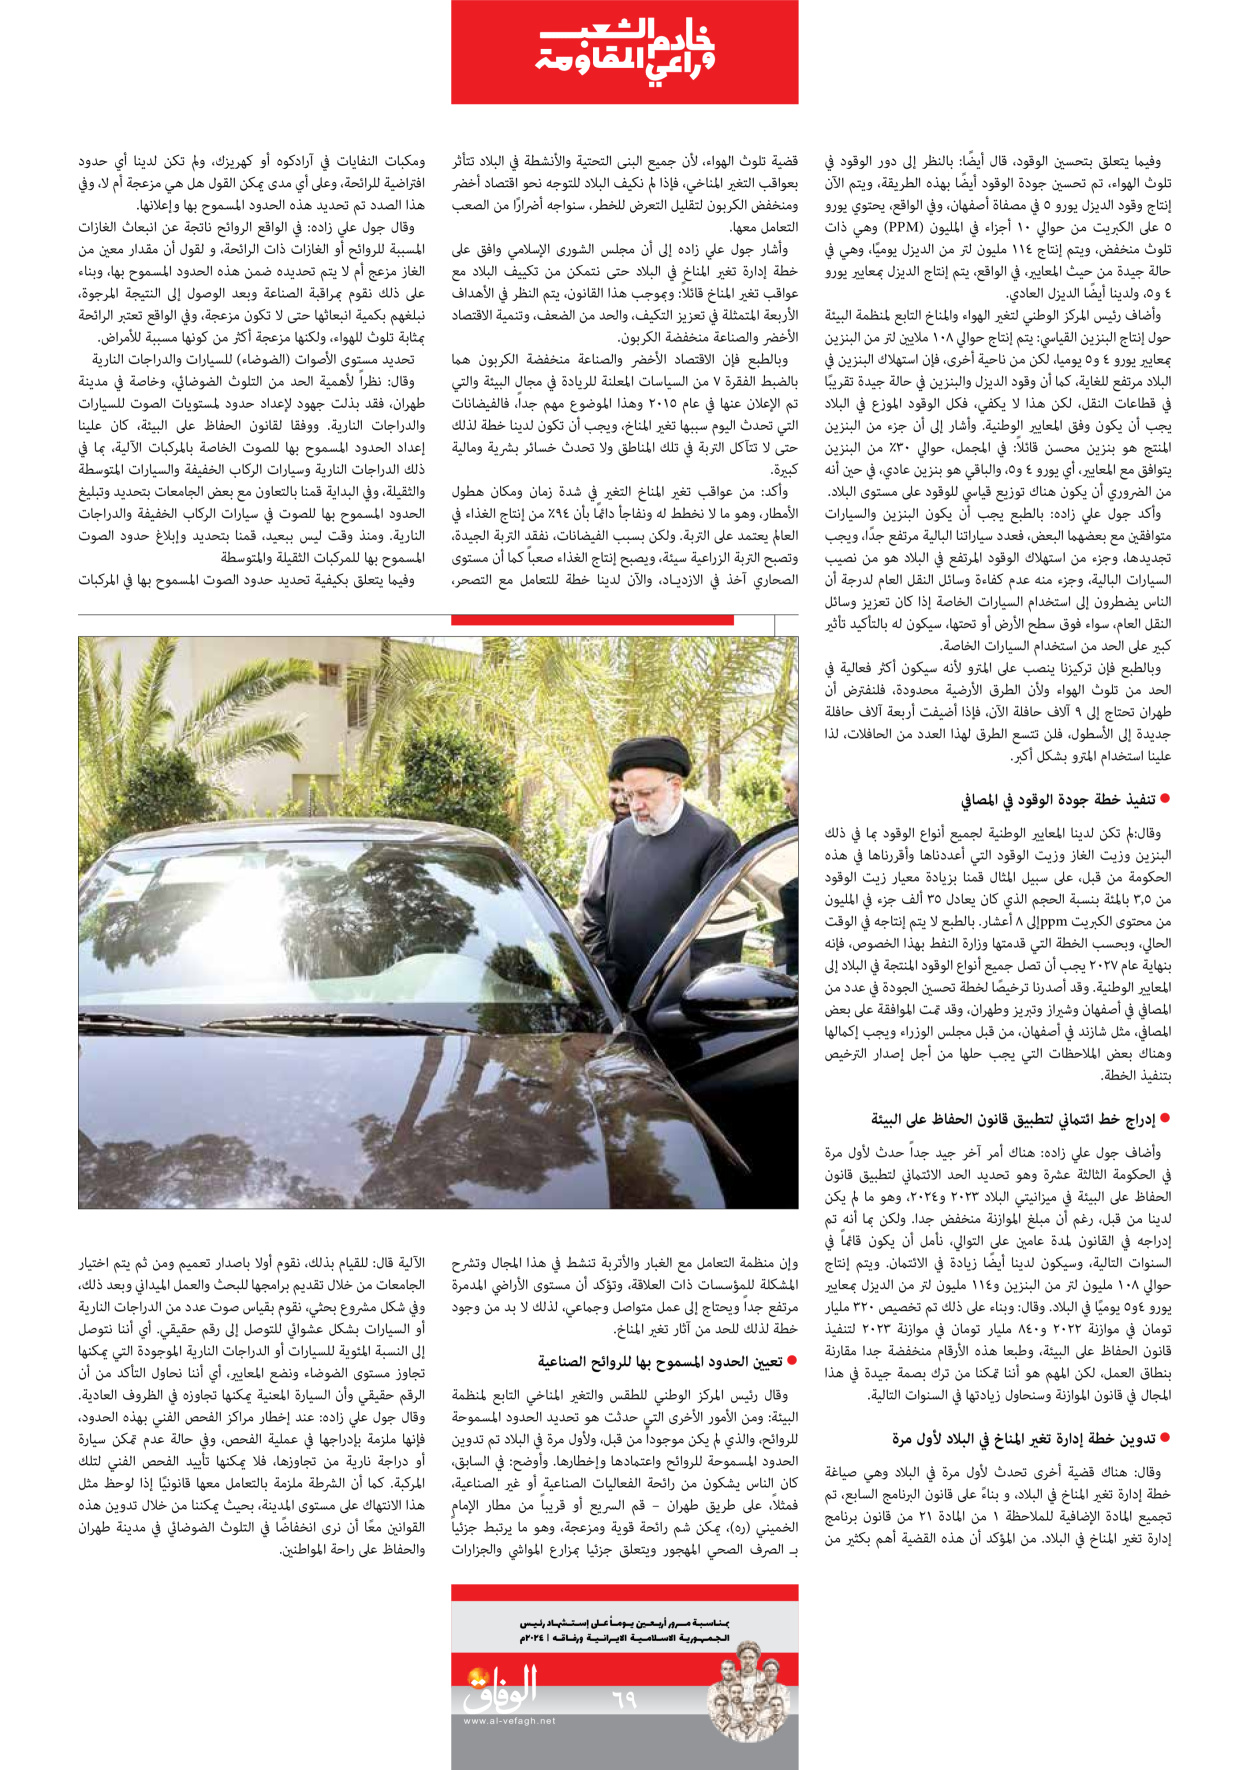 صحیفة ایران الدولیة الوفاق - ملحق ویژه نامه چهلم شهید رییسی - ٢٩ يونيو ٢٠٢٤ - الصفحة ٦۹